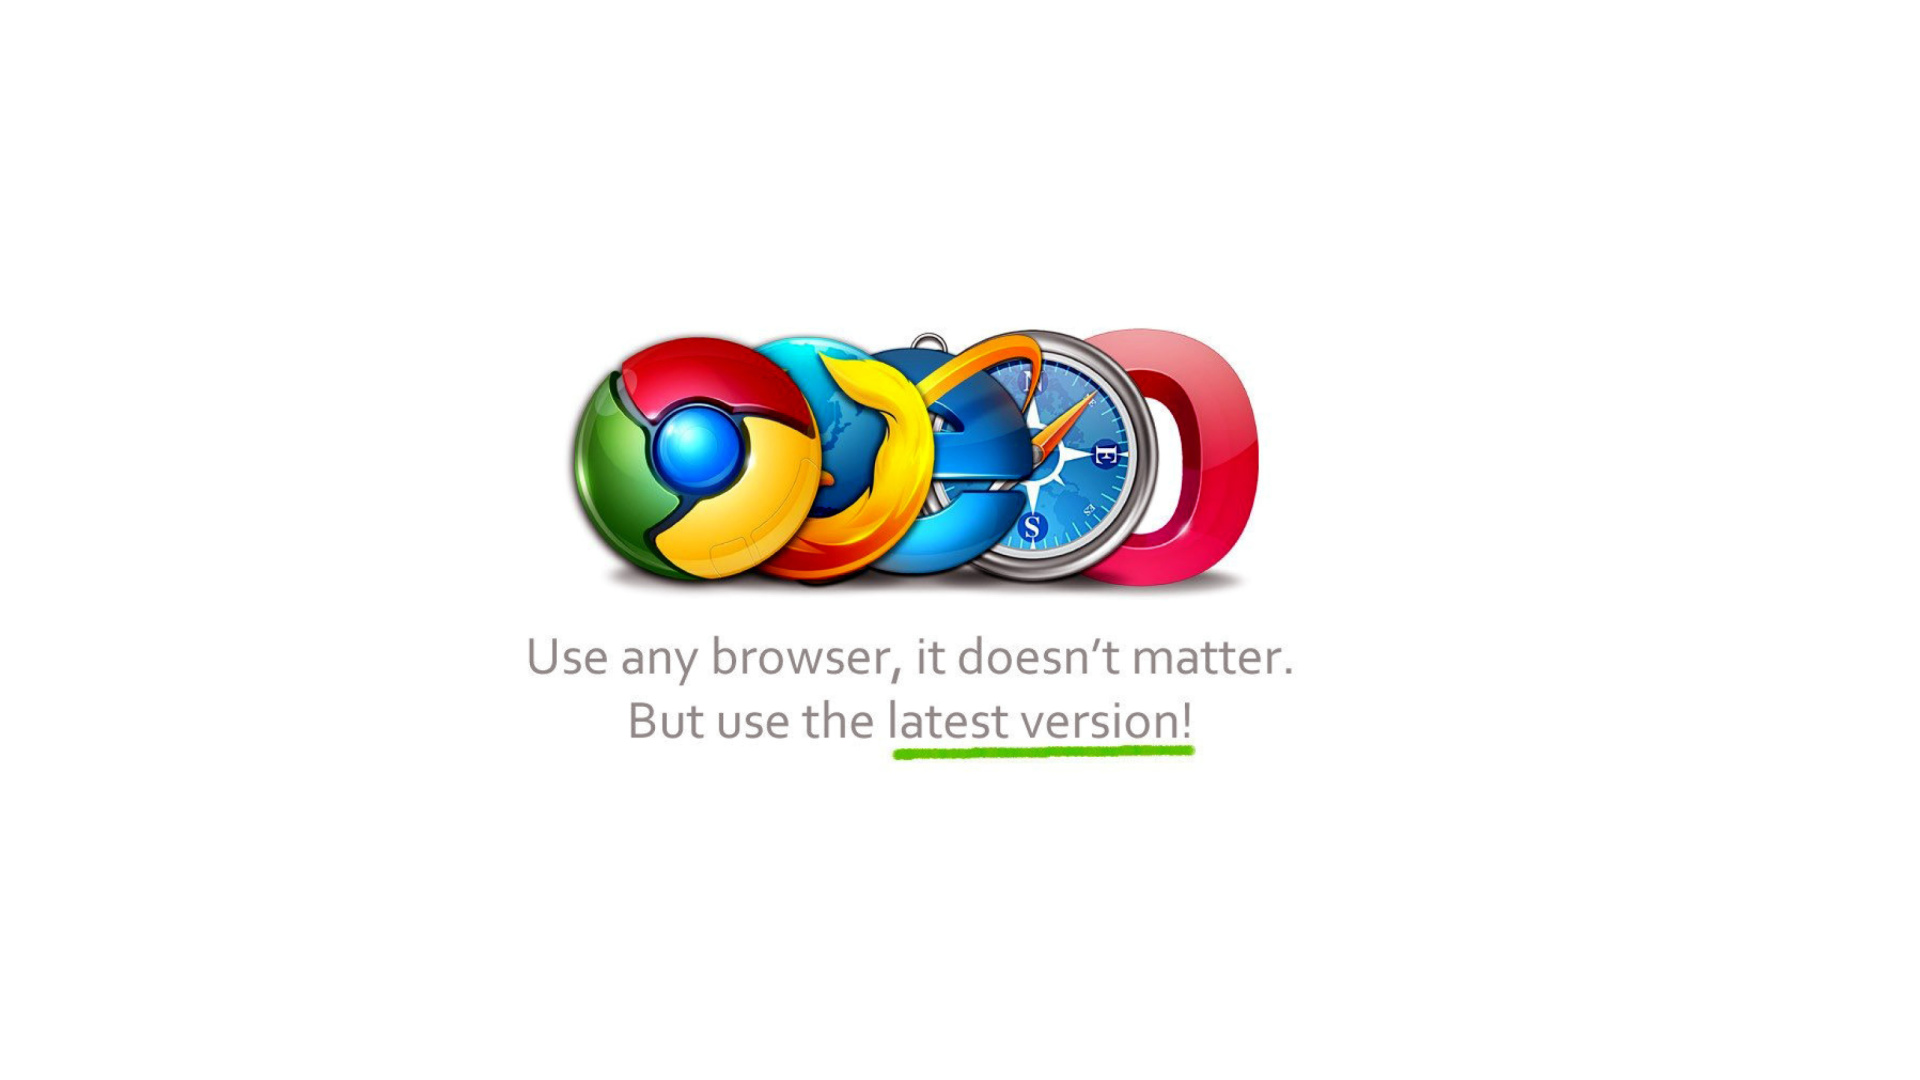 Das Choose Best Web Browser Wallpaper 1920x1080